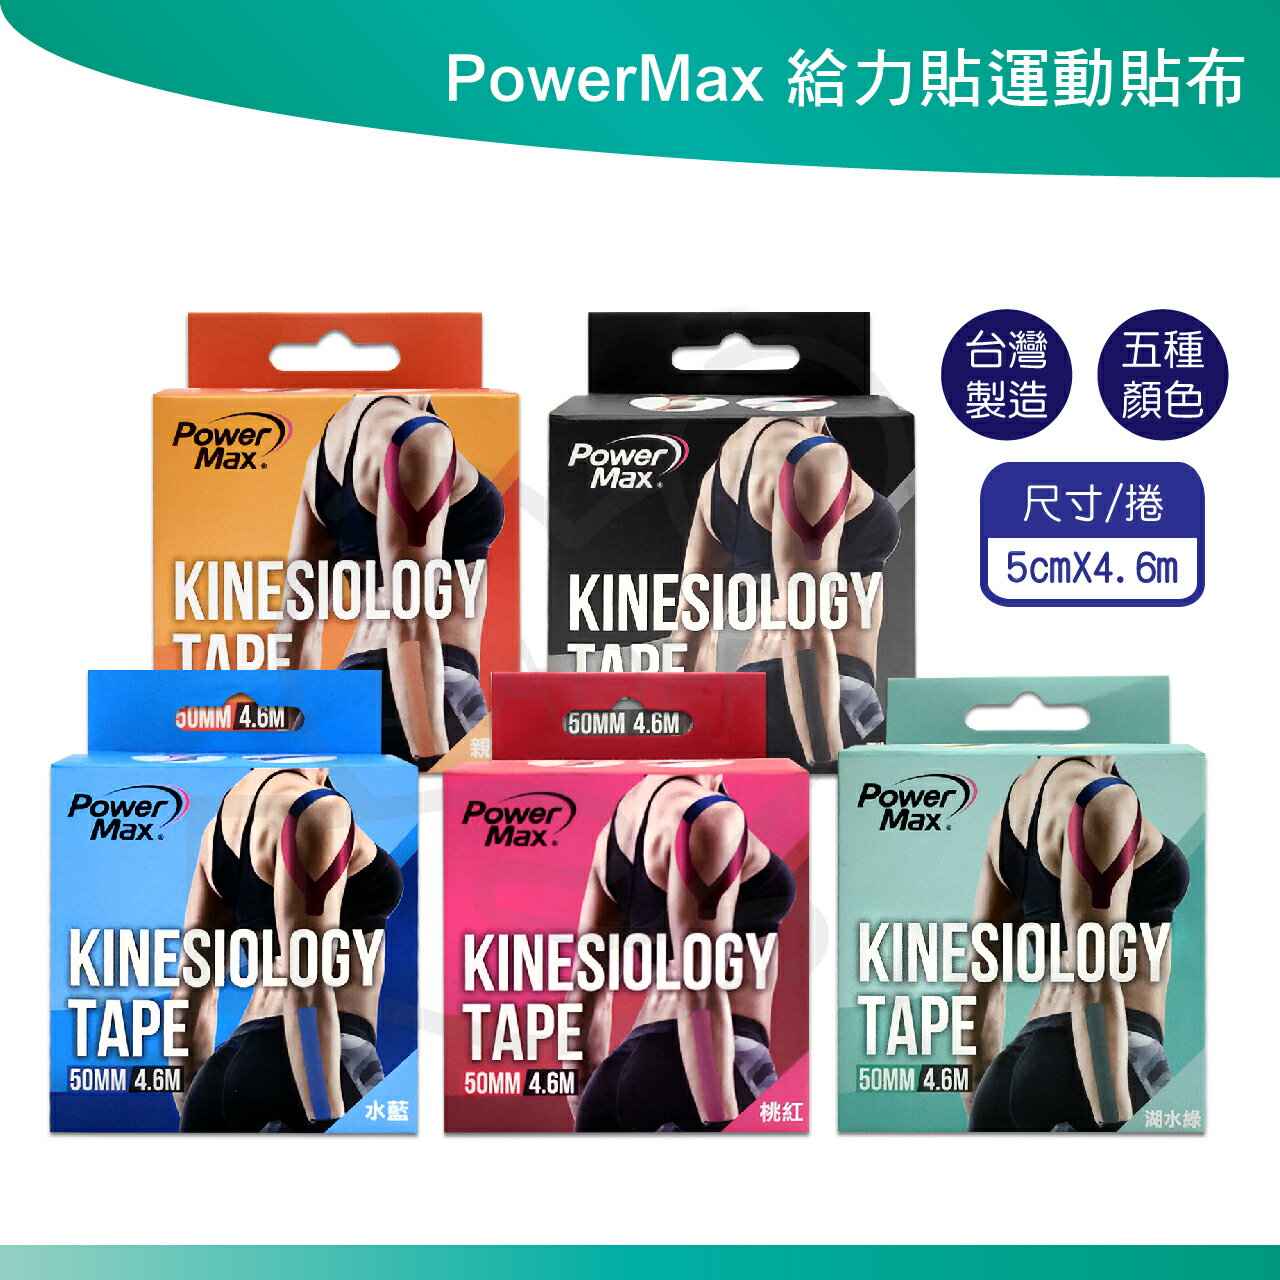 PowerMax 給力貼運動貼布 多種顏色 運動支撐 運動防護 台灣製造